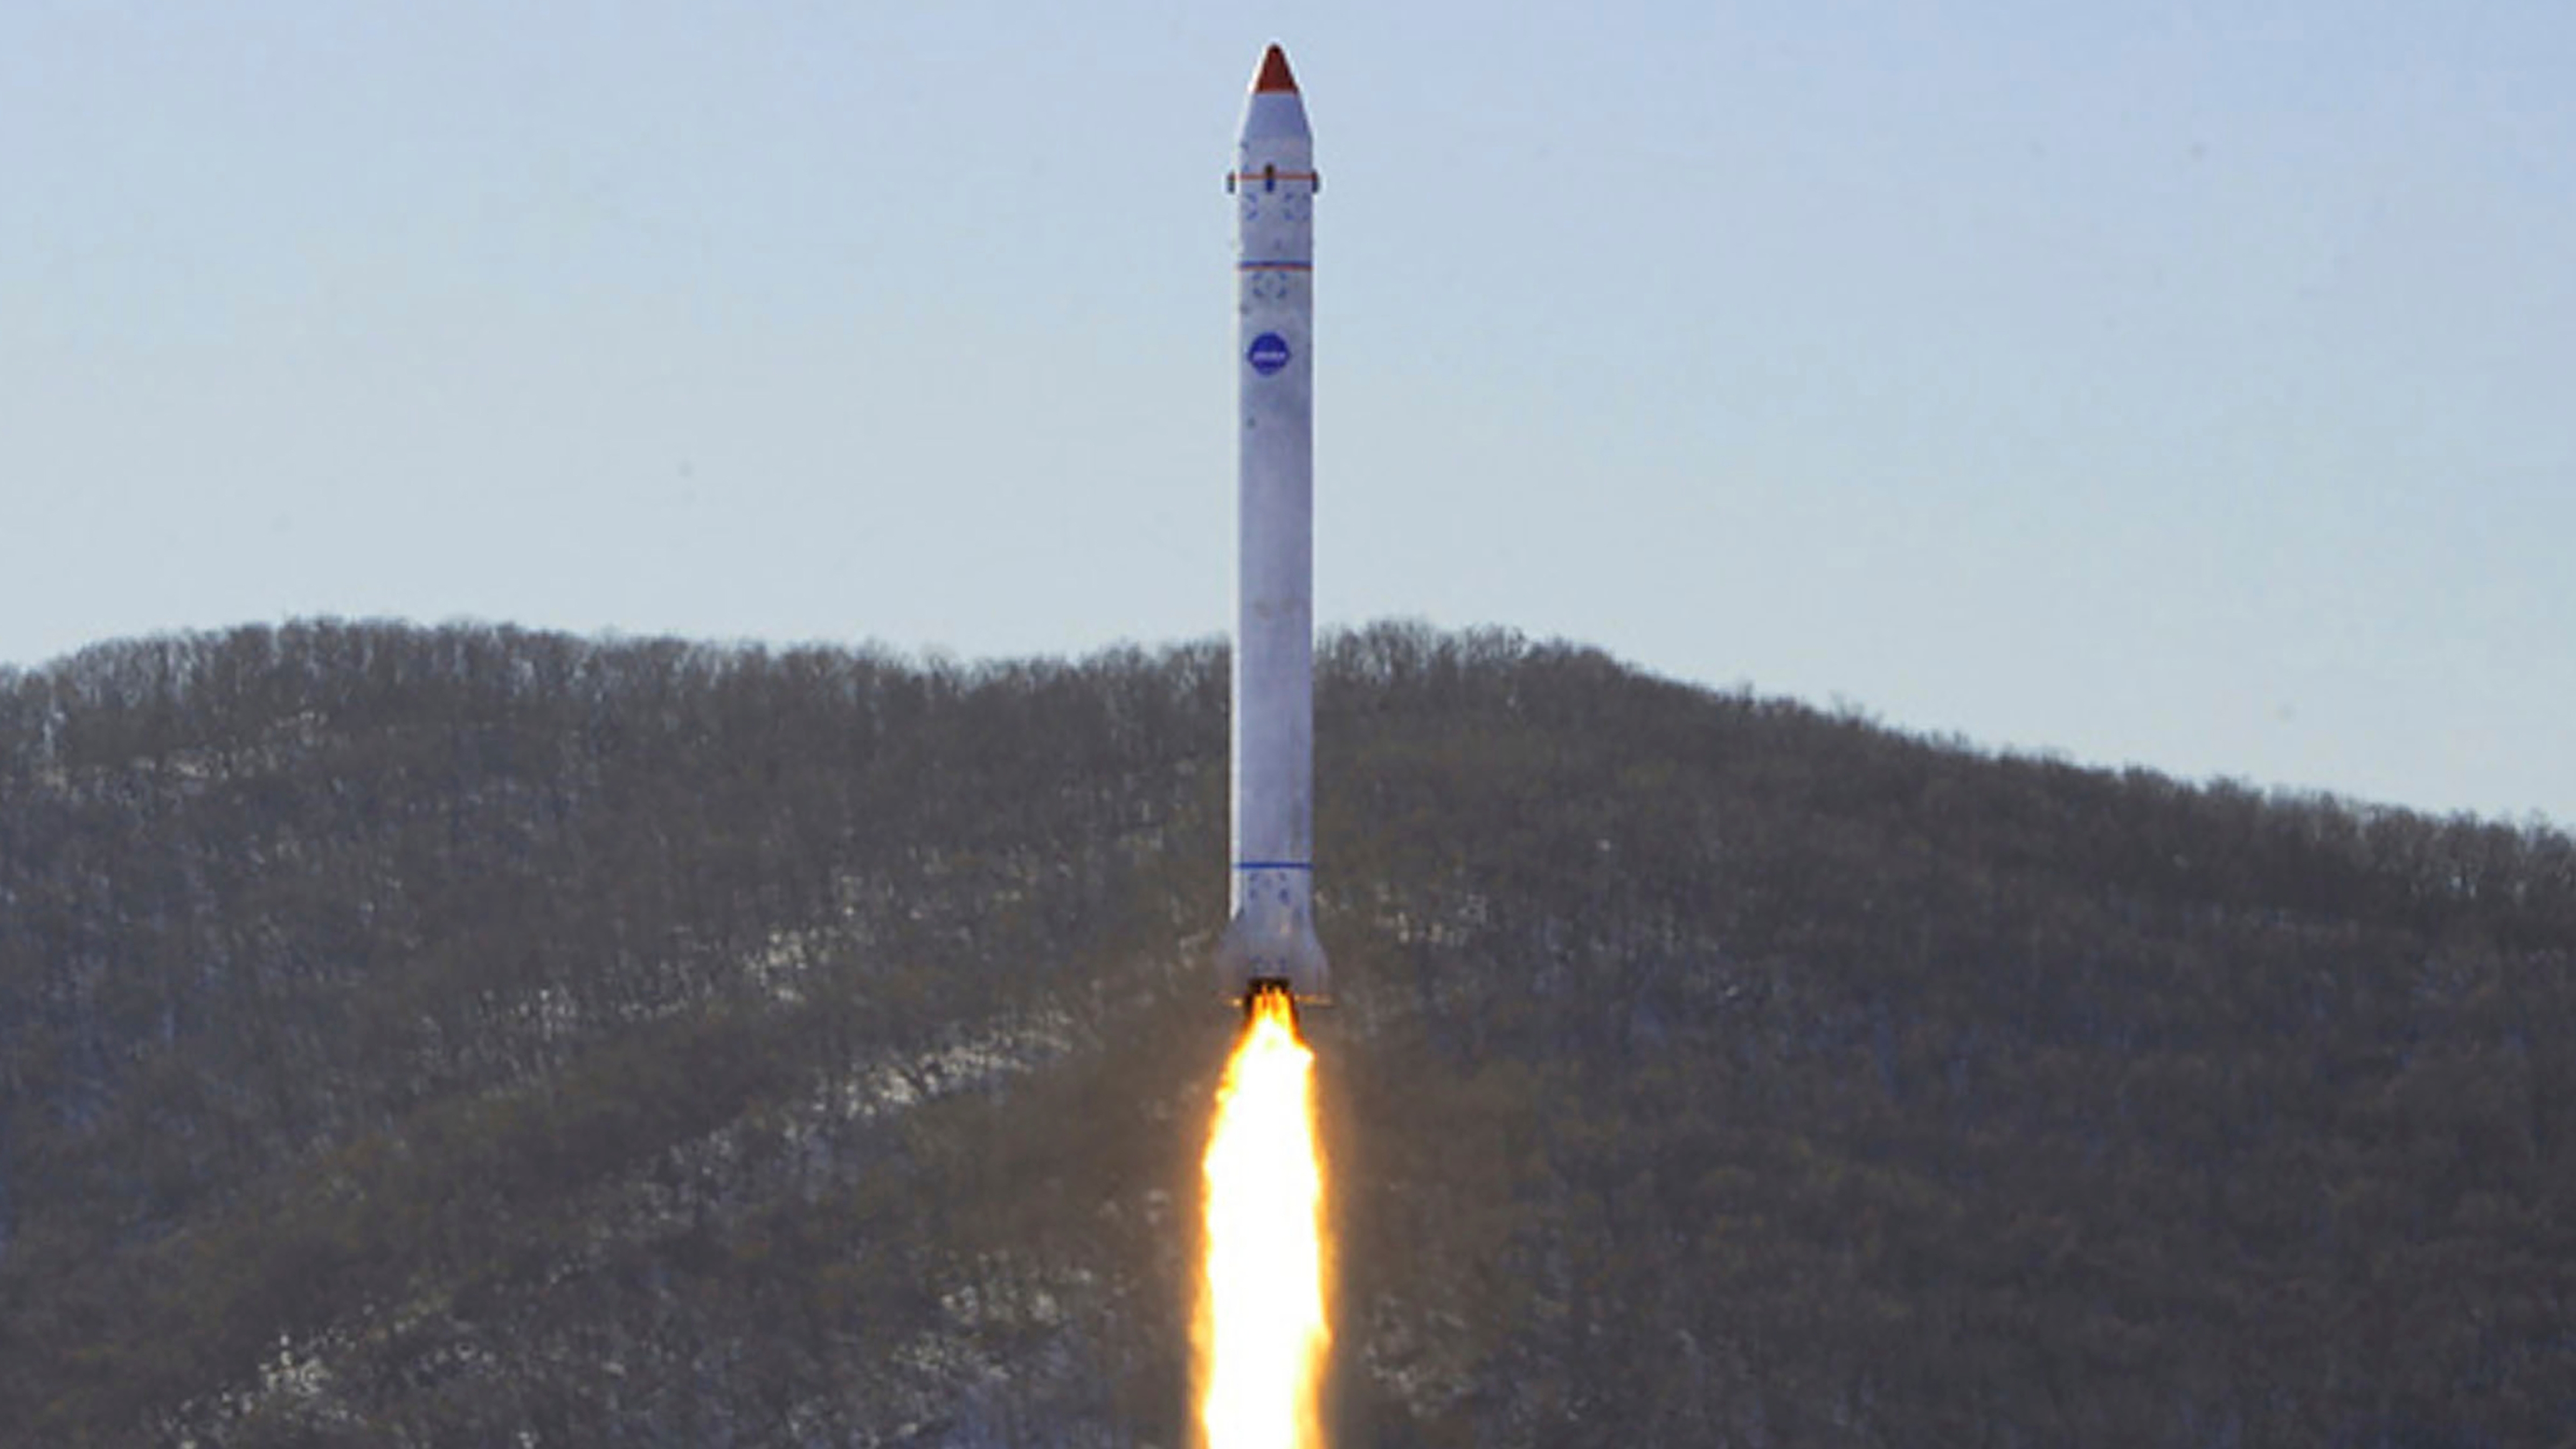 EEUU condenó el lanzamiento del satélite espía norcoreano y advirtió que esta acción viola múltiples resoluciones de la ONU